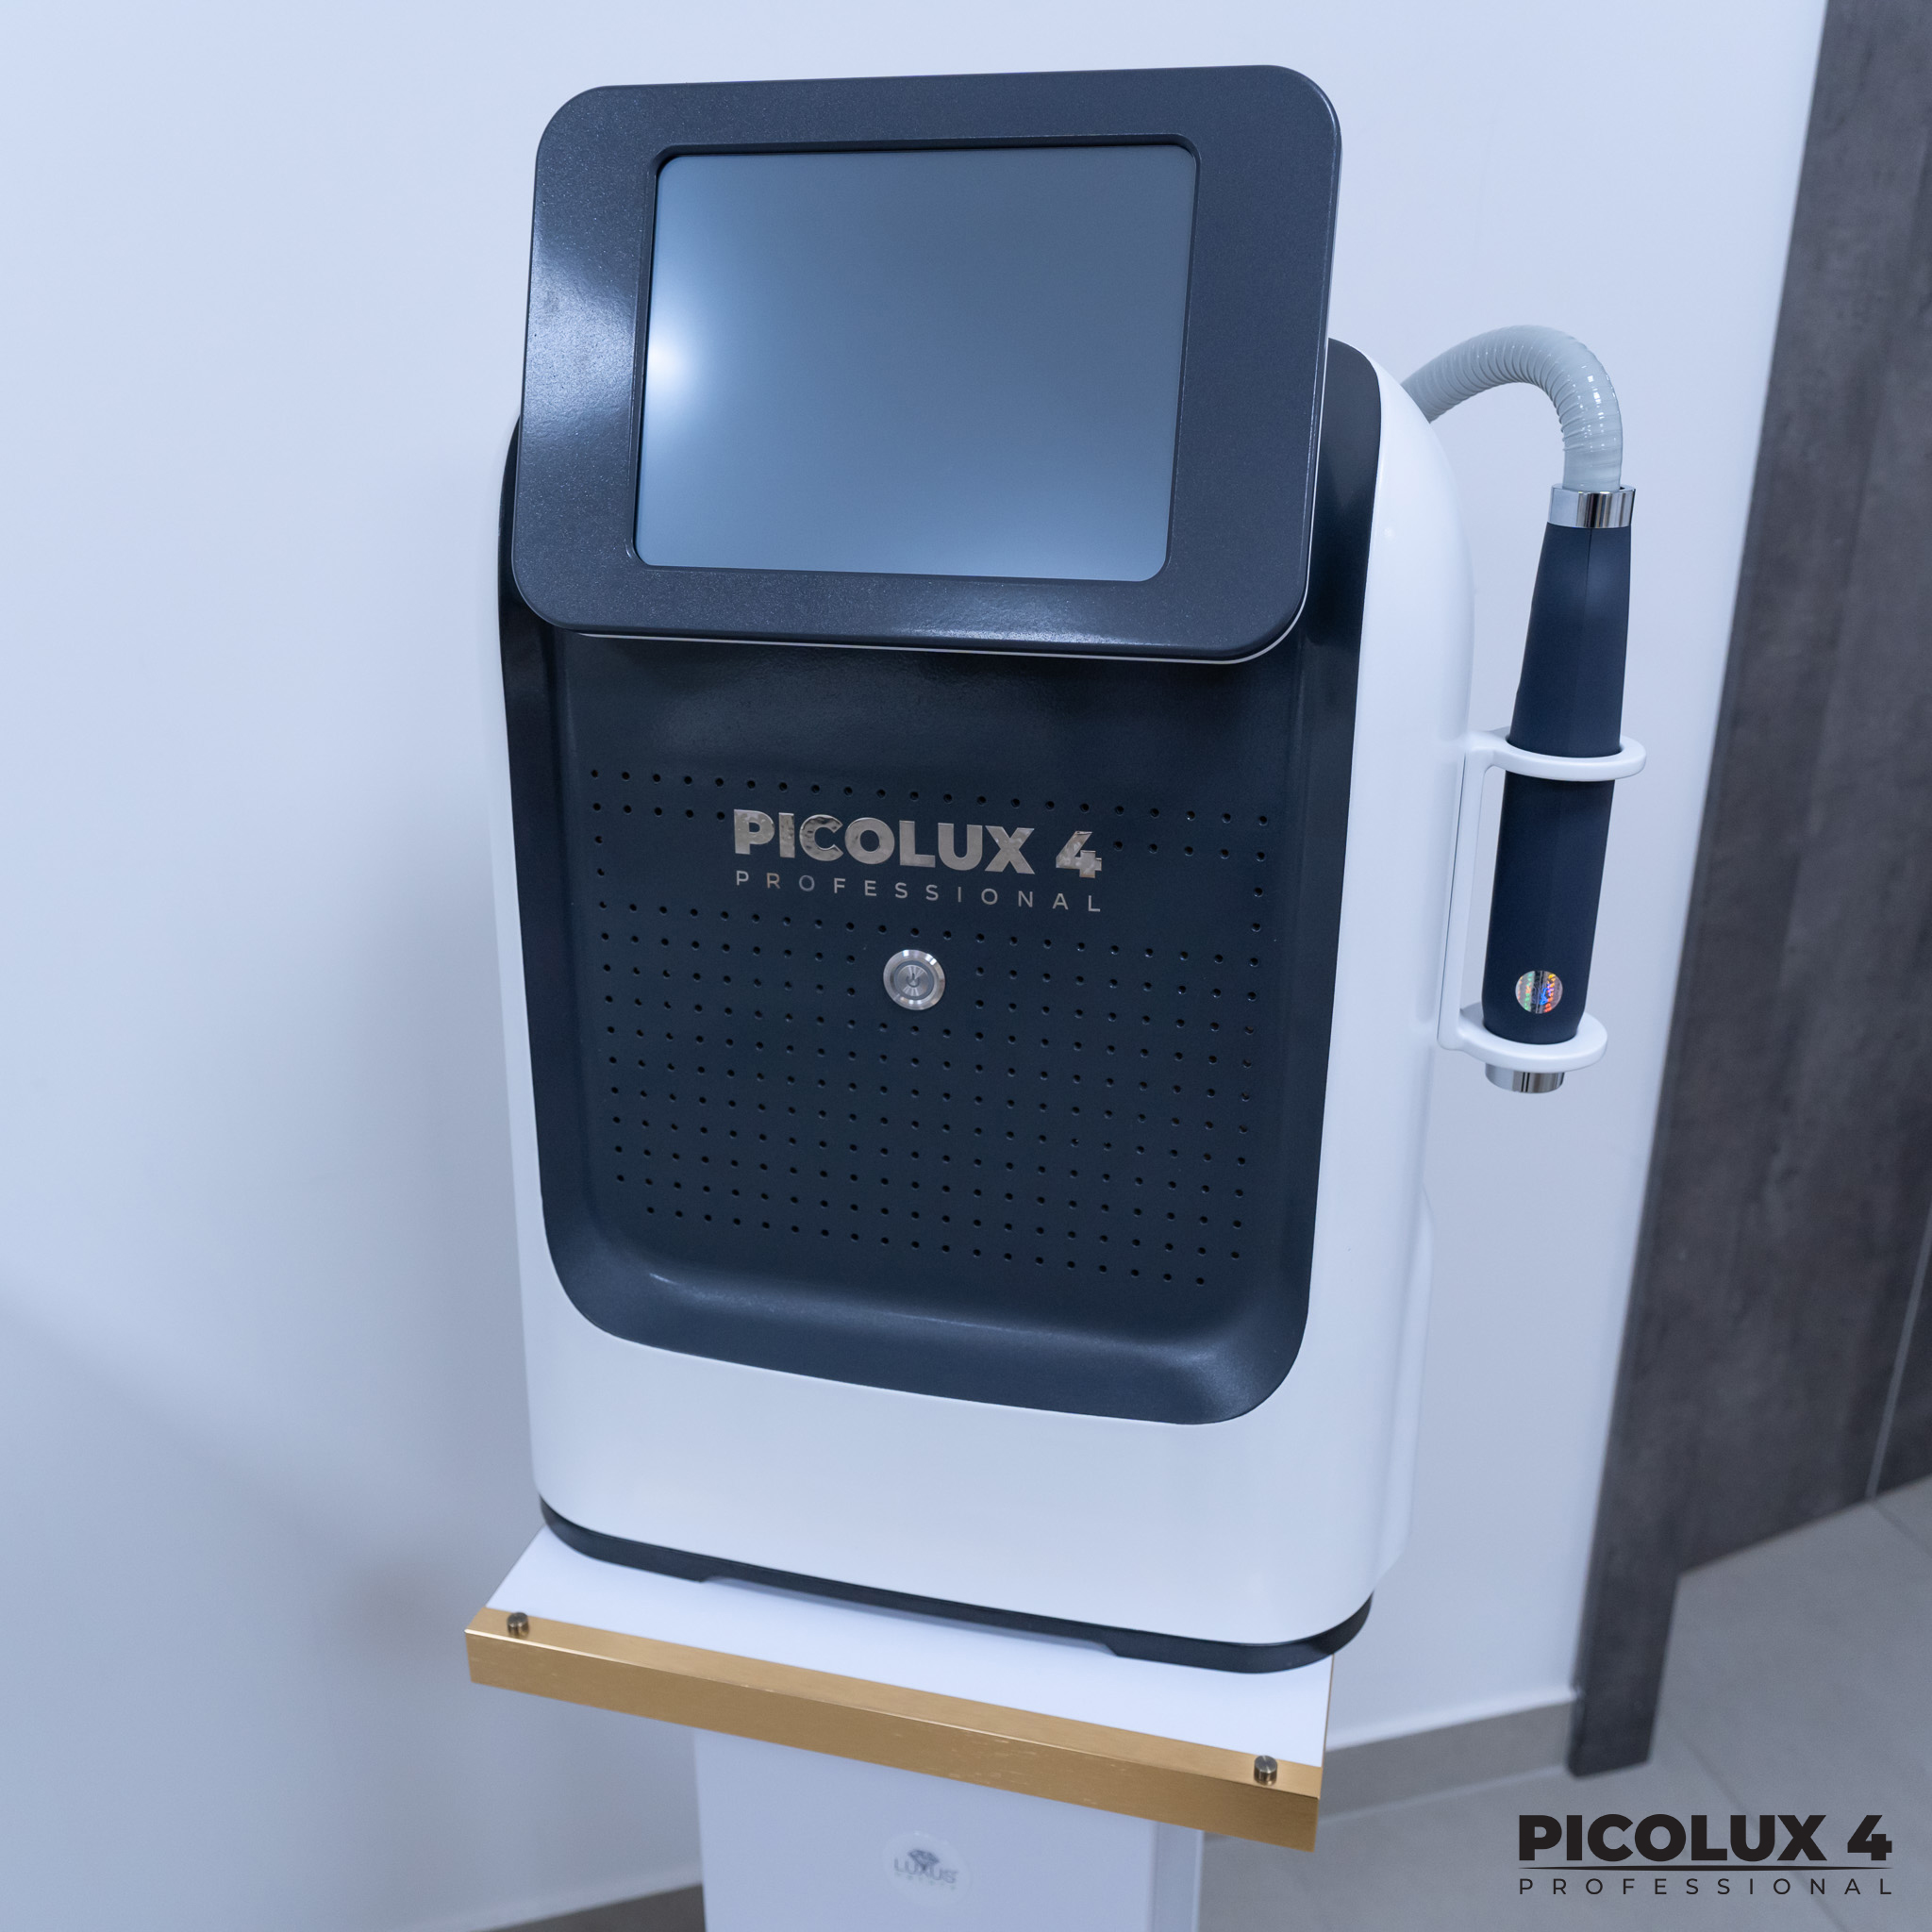 Picolux działa w oparciu o technologię pikosekundową, bazującą na wysyłaniu precyzyjnych, ultrakrótkich impulsów.